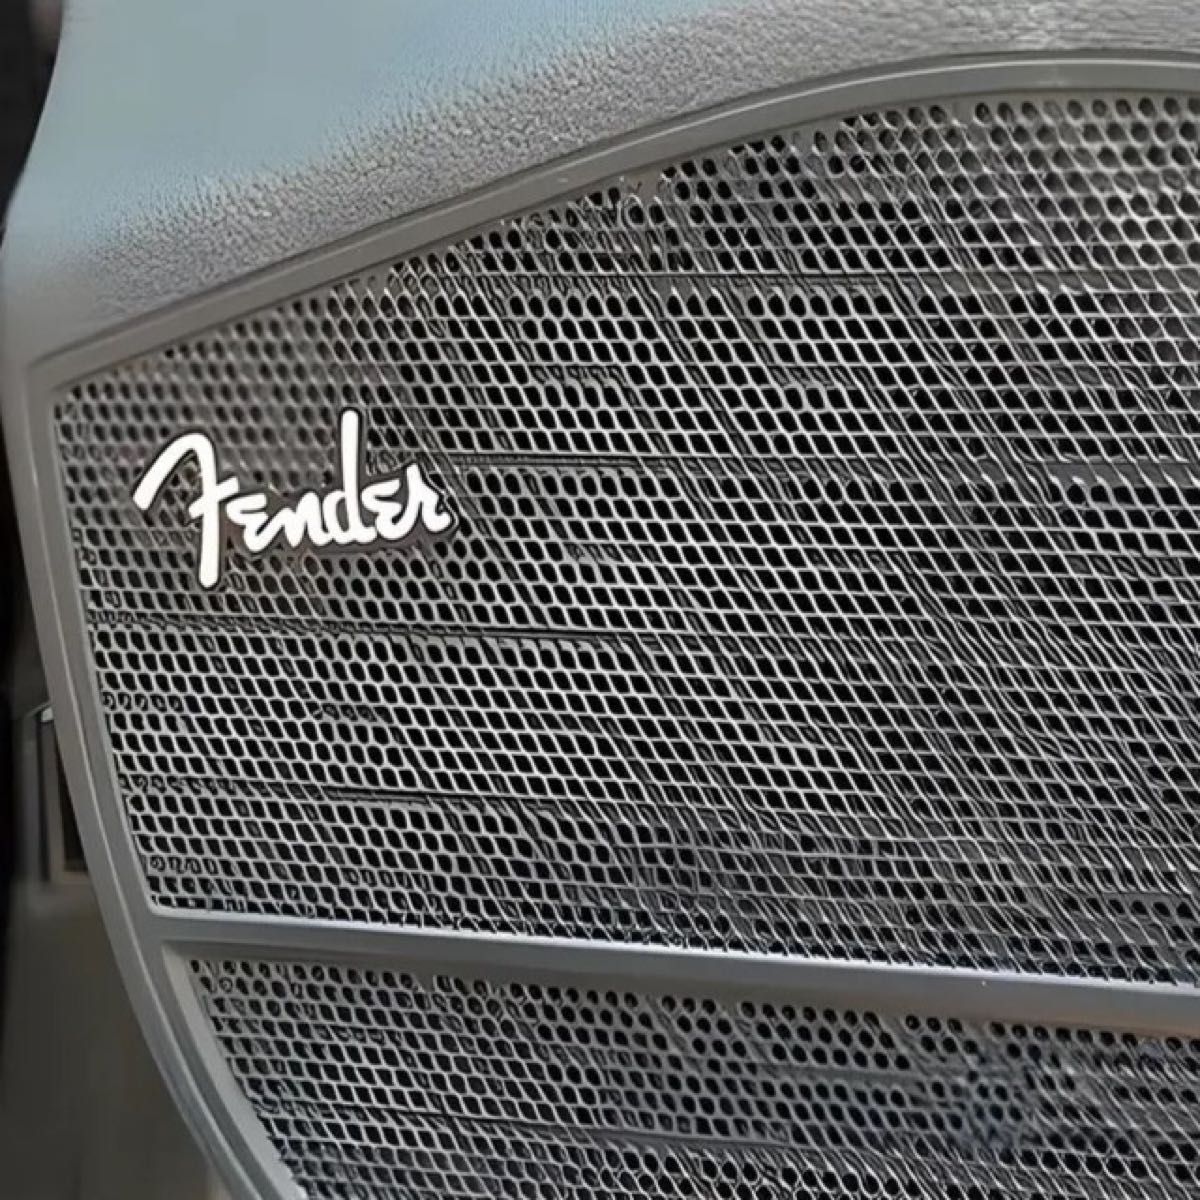 Fender フェンダー アルミ エンブレム プレート シルバー/ブラック b